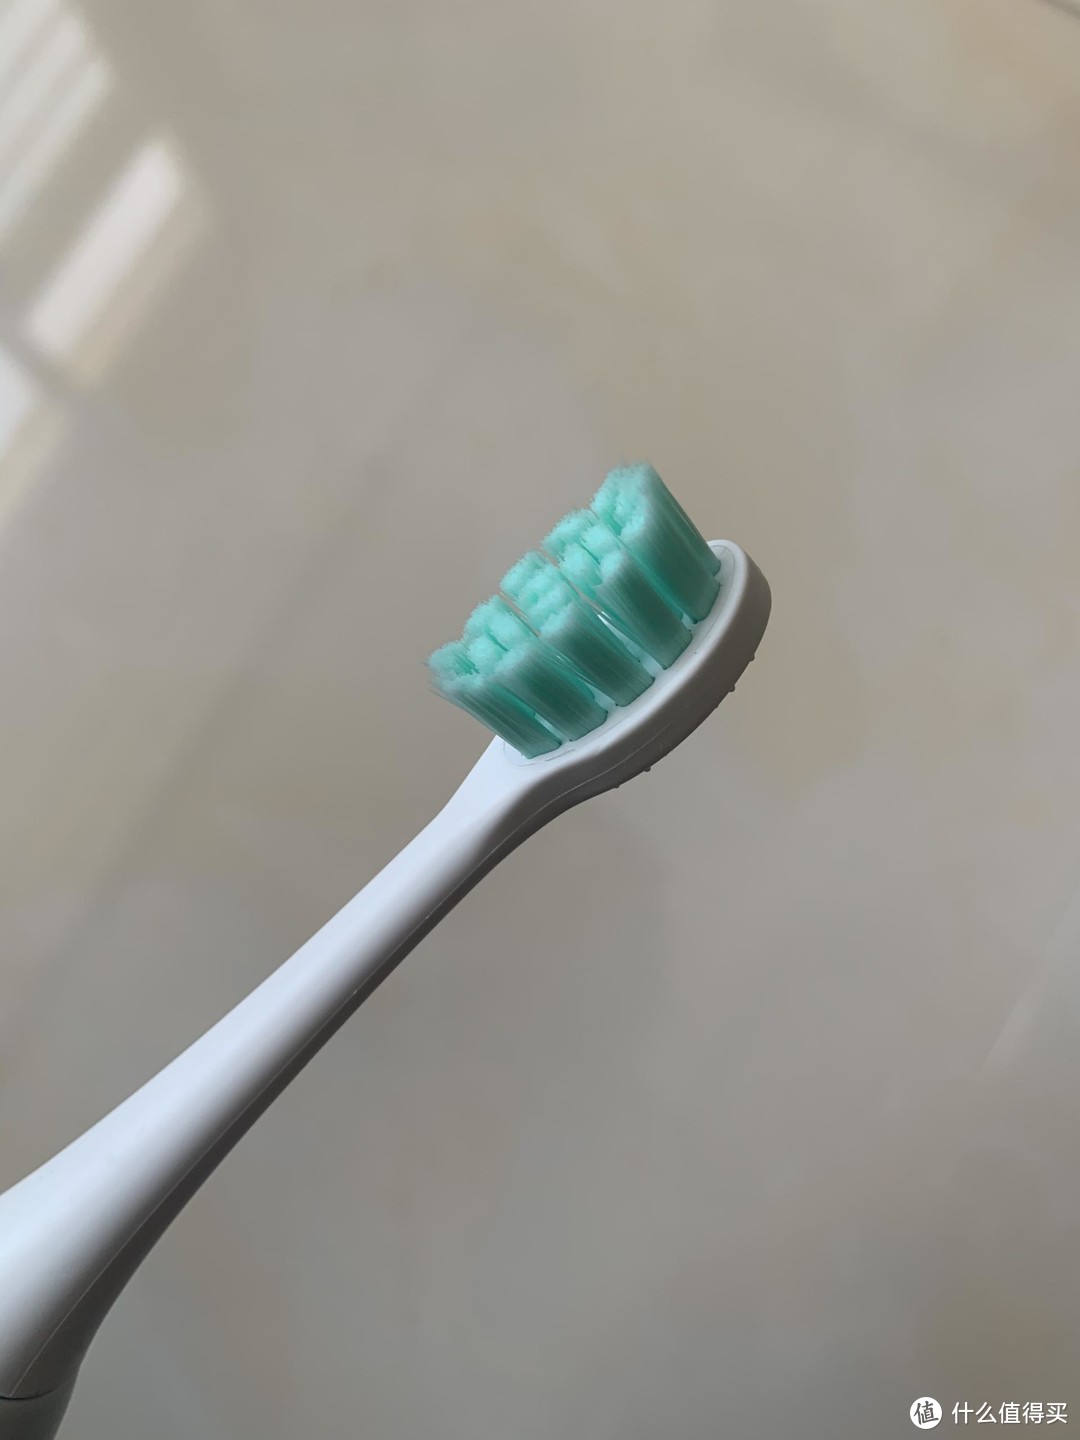 国产无好货？花几十块钱买的电动牙刷半个月就坏了？